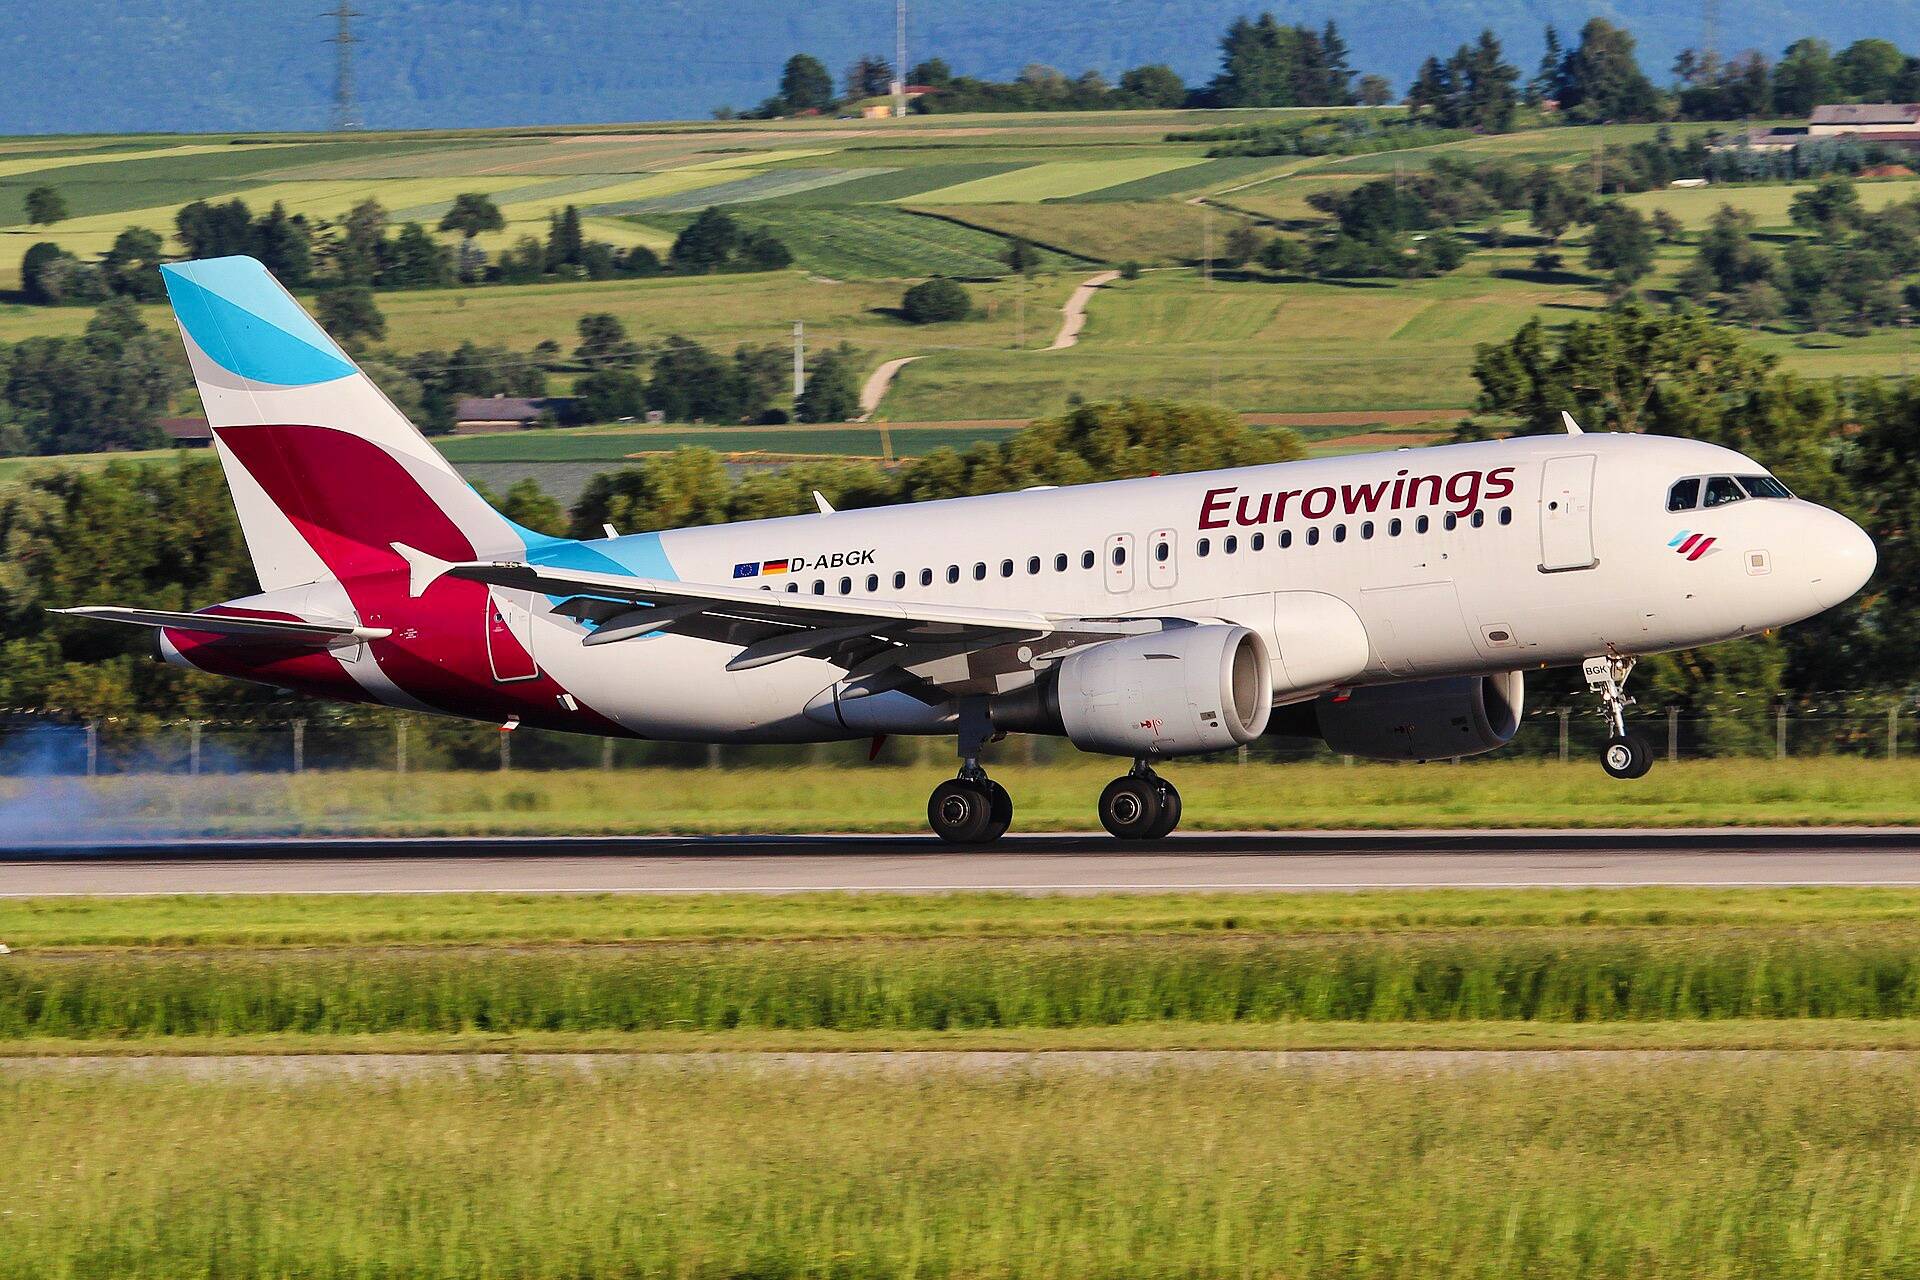 Günstige Flüge ✈️ Eurowings (EW)